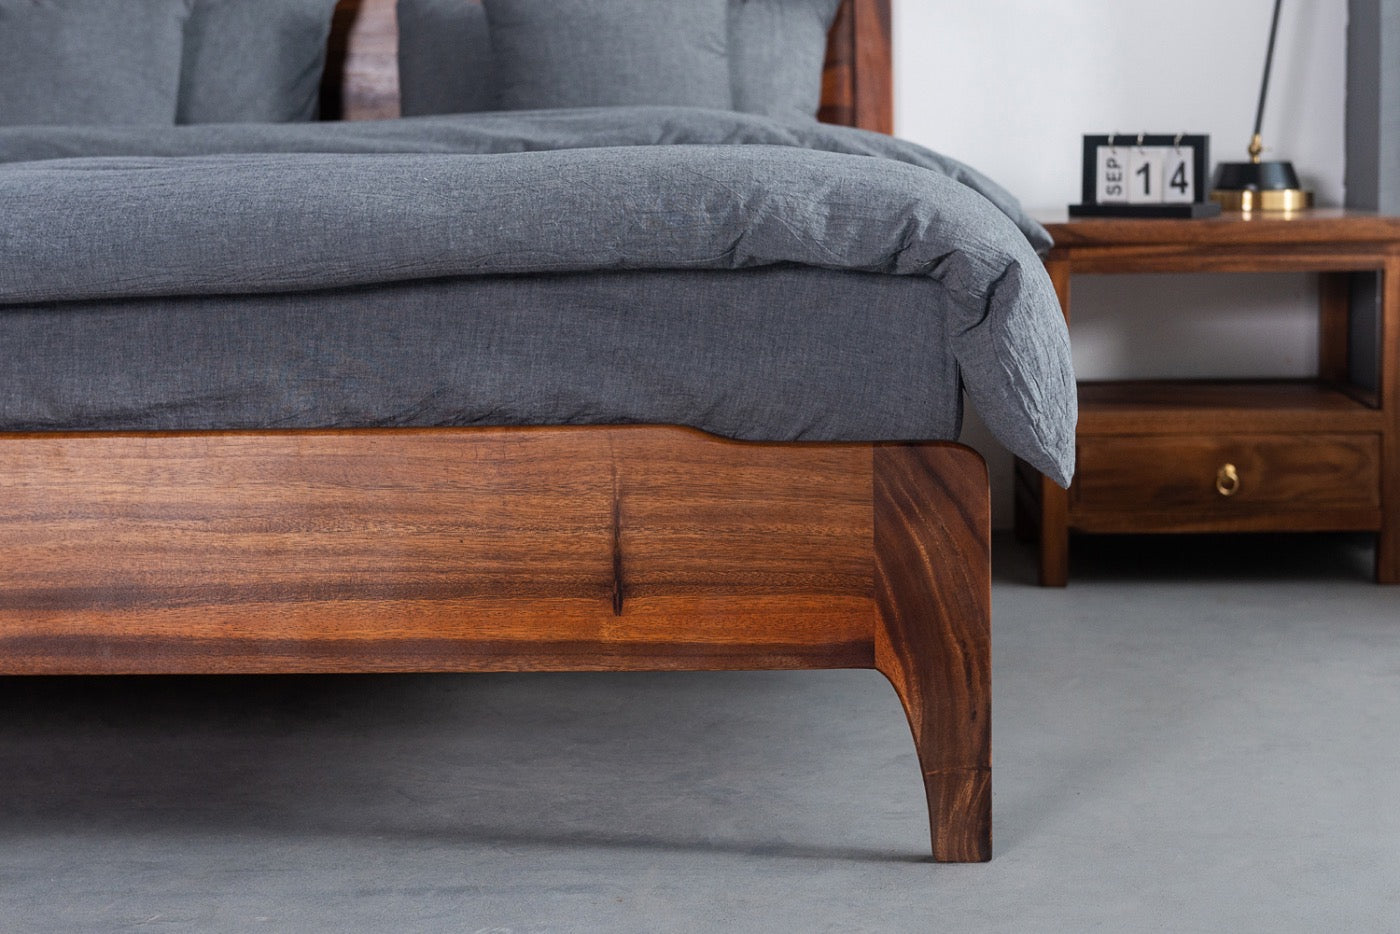 solid SA walnut bed frame, walnut wooden bed frame